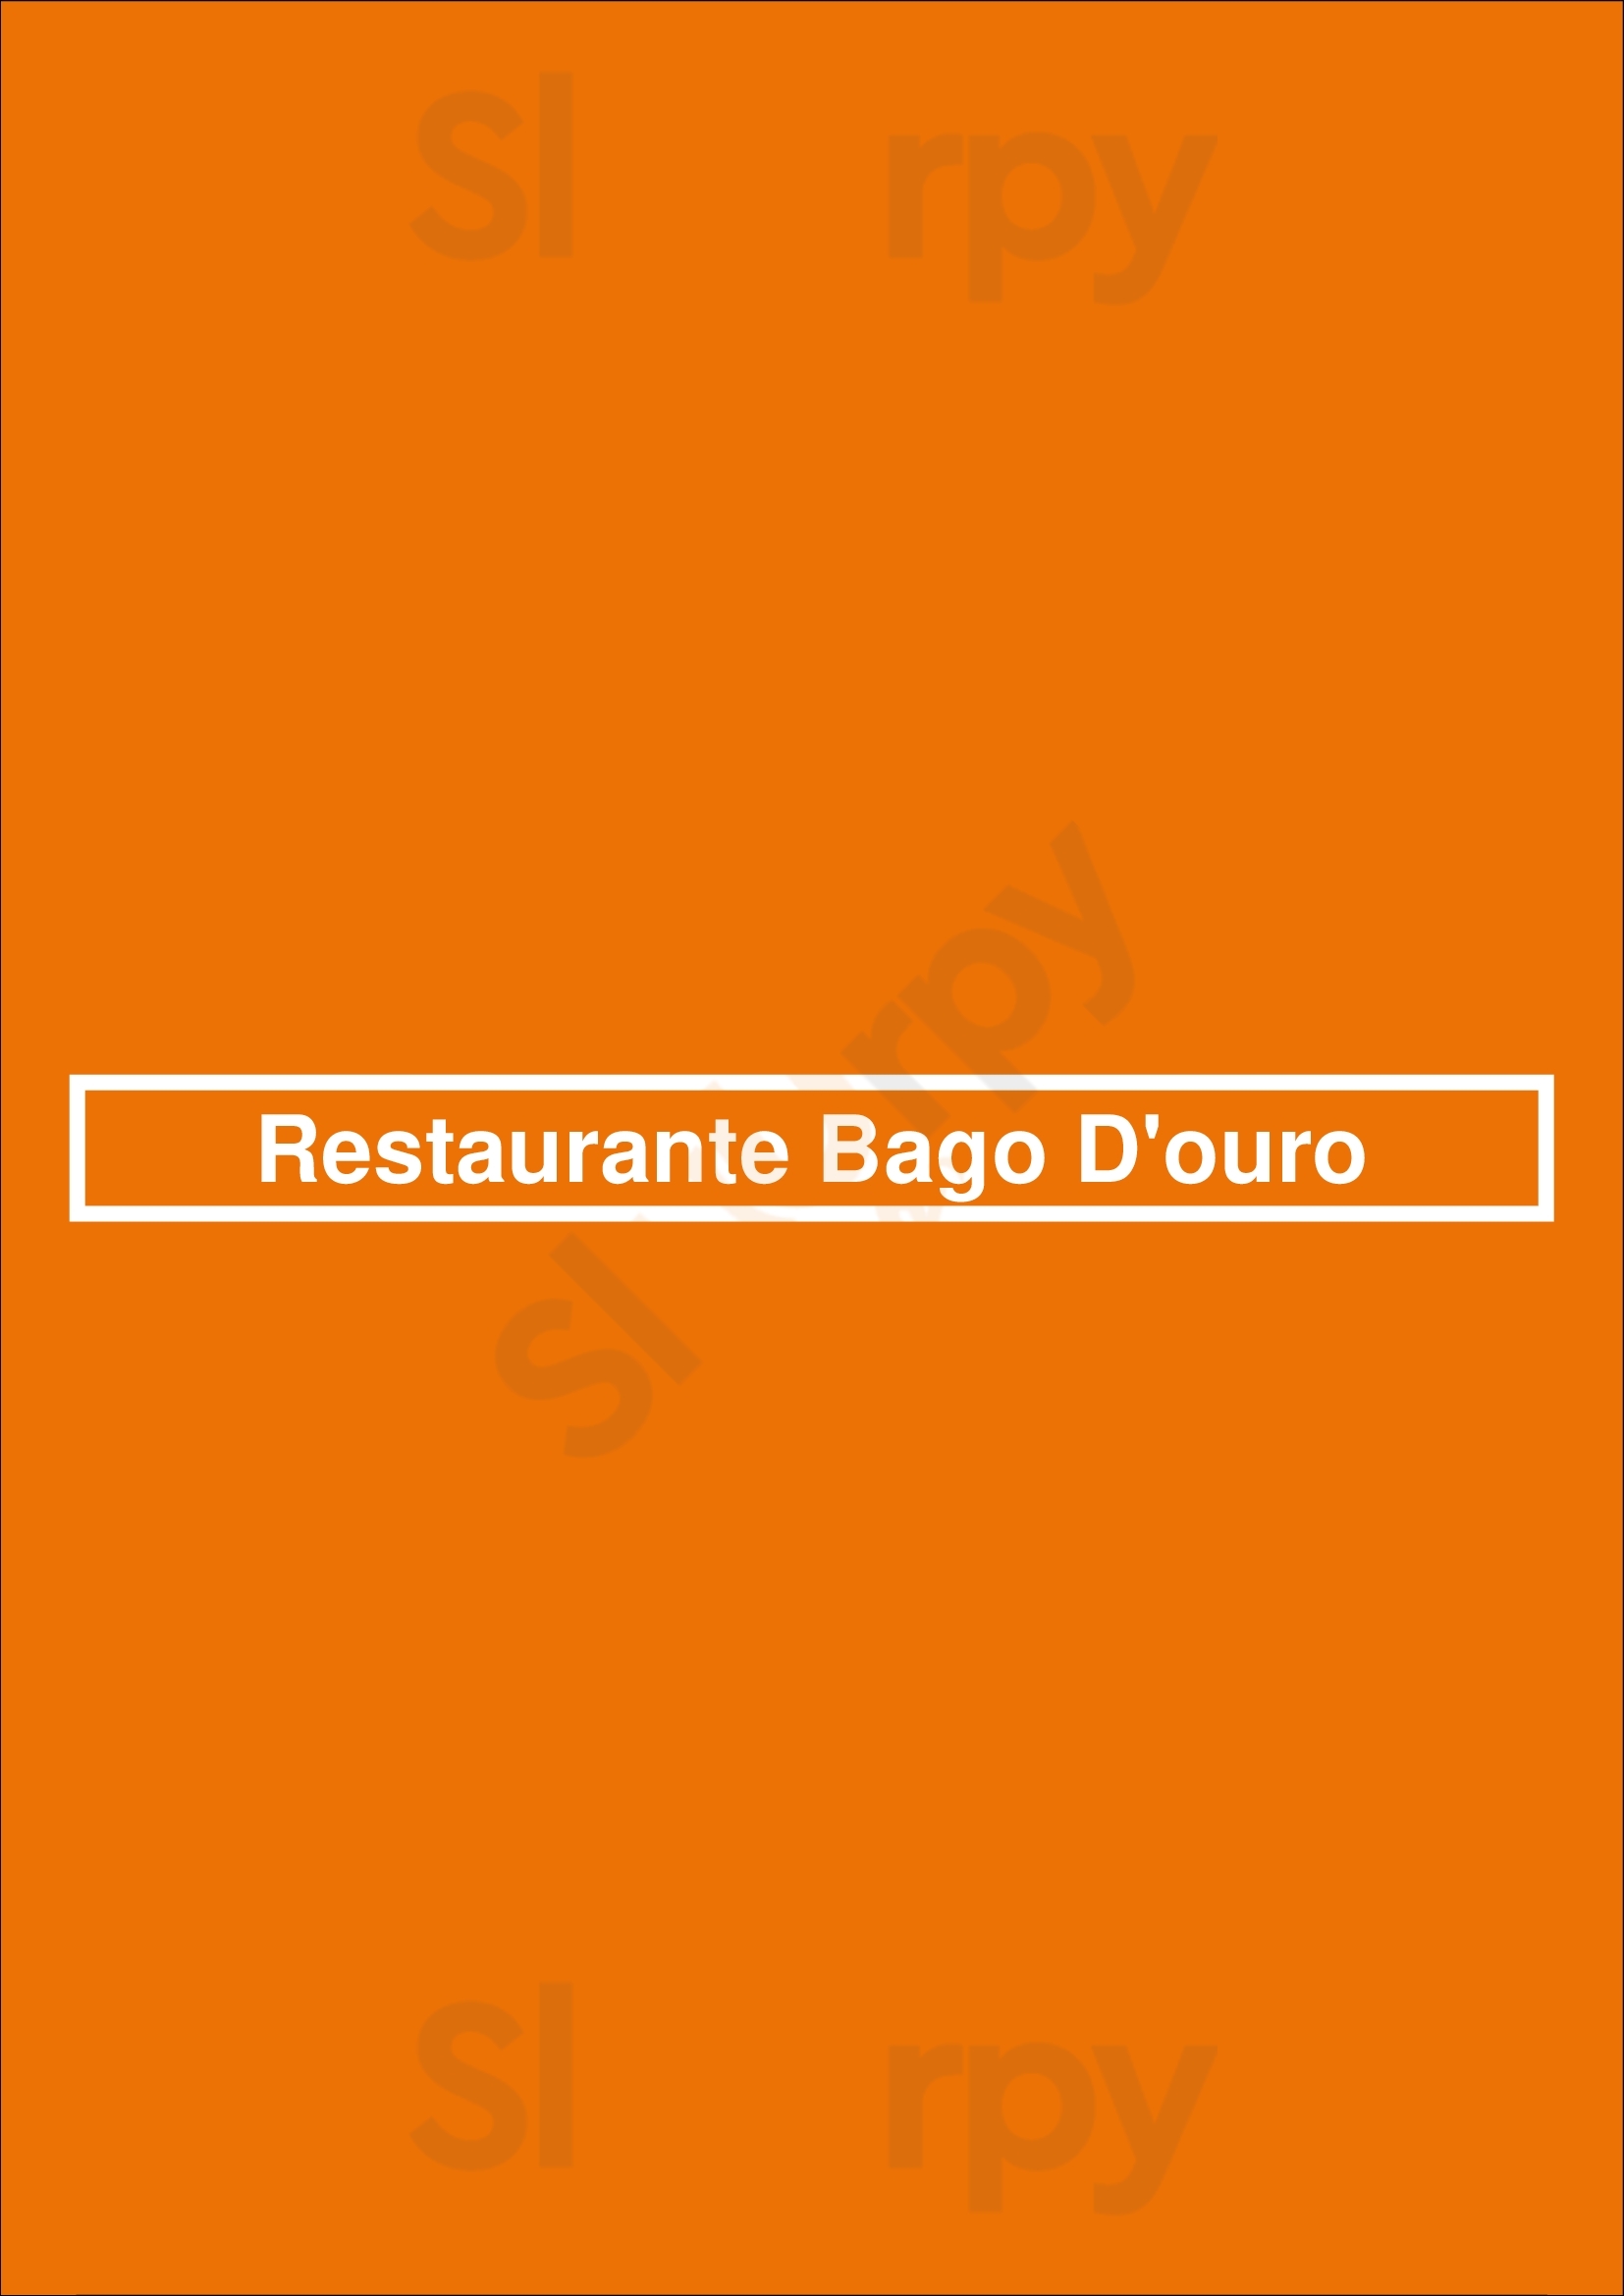 Restaurante Bago D'ouro Peso da Régua Menu - 1